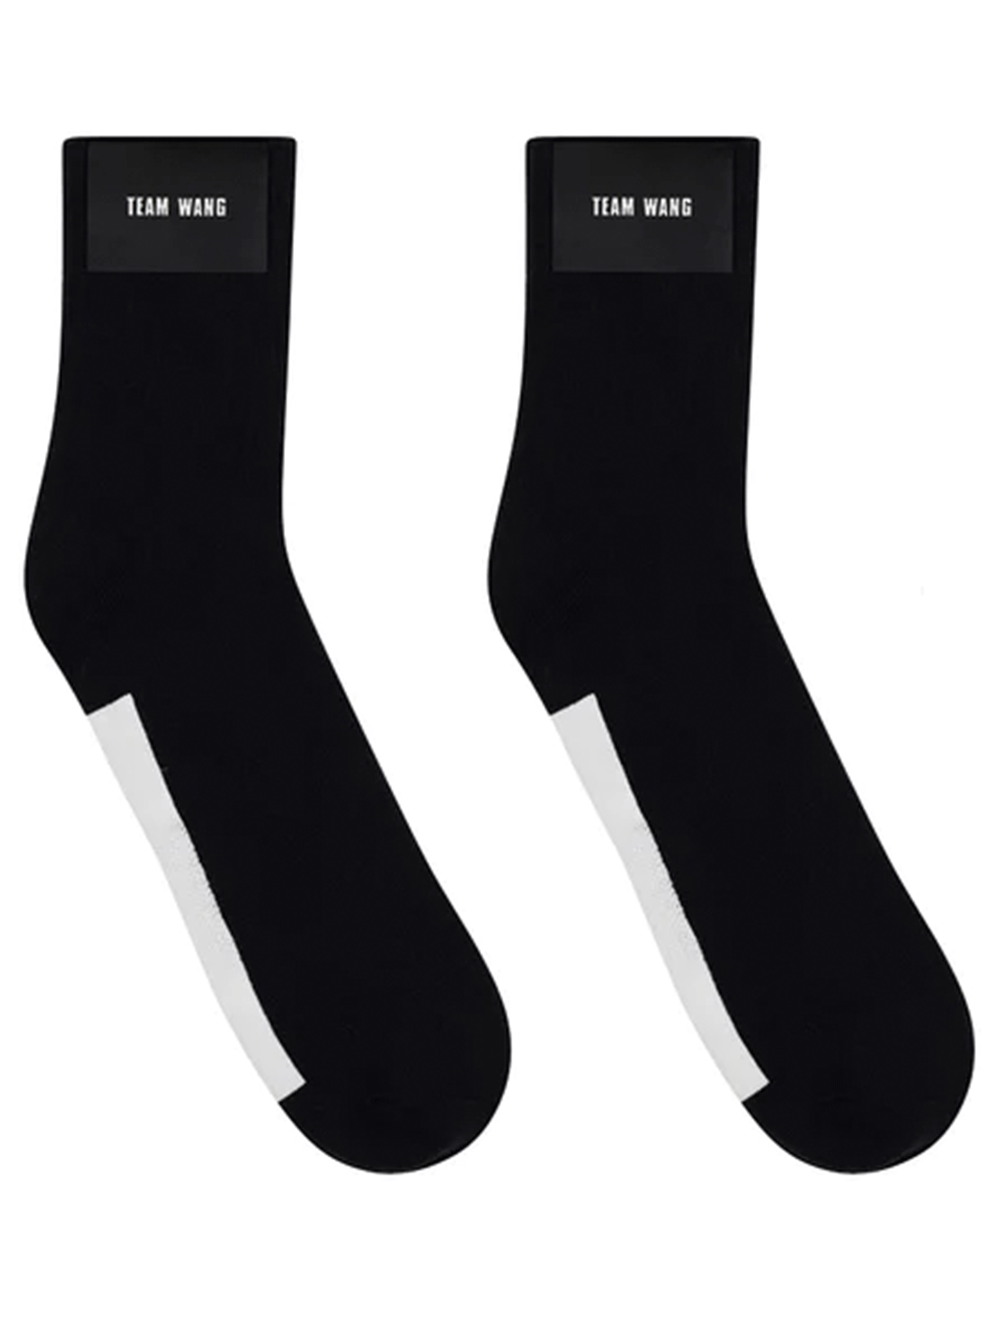 TEAM-WANG-Design-The-Original-1-Sock-Black-1